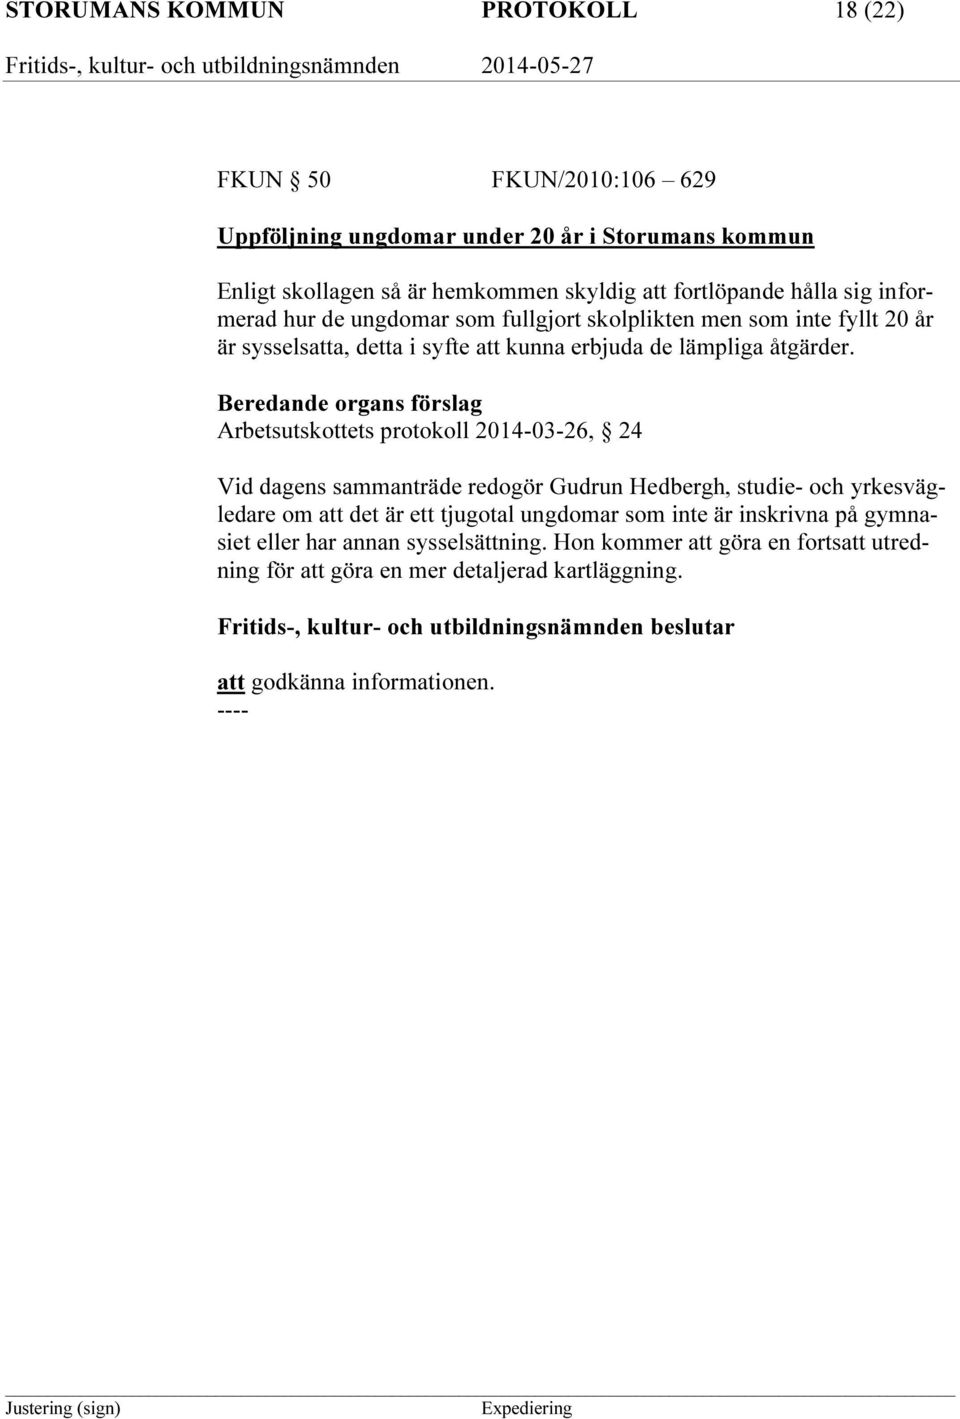 Beredande organs förslag Arbetsutskottets protokoll 2014-03-26, 24 Vid dagens sammanträde redogör Gudrun Hedbergh, studie- och yrkesvägledare om att det är ett tjugotal